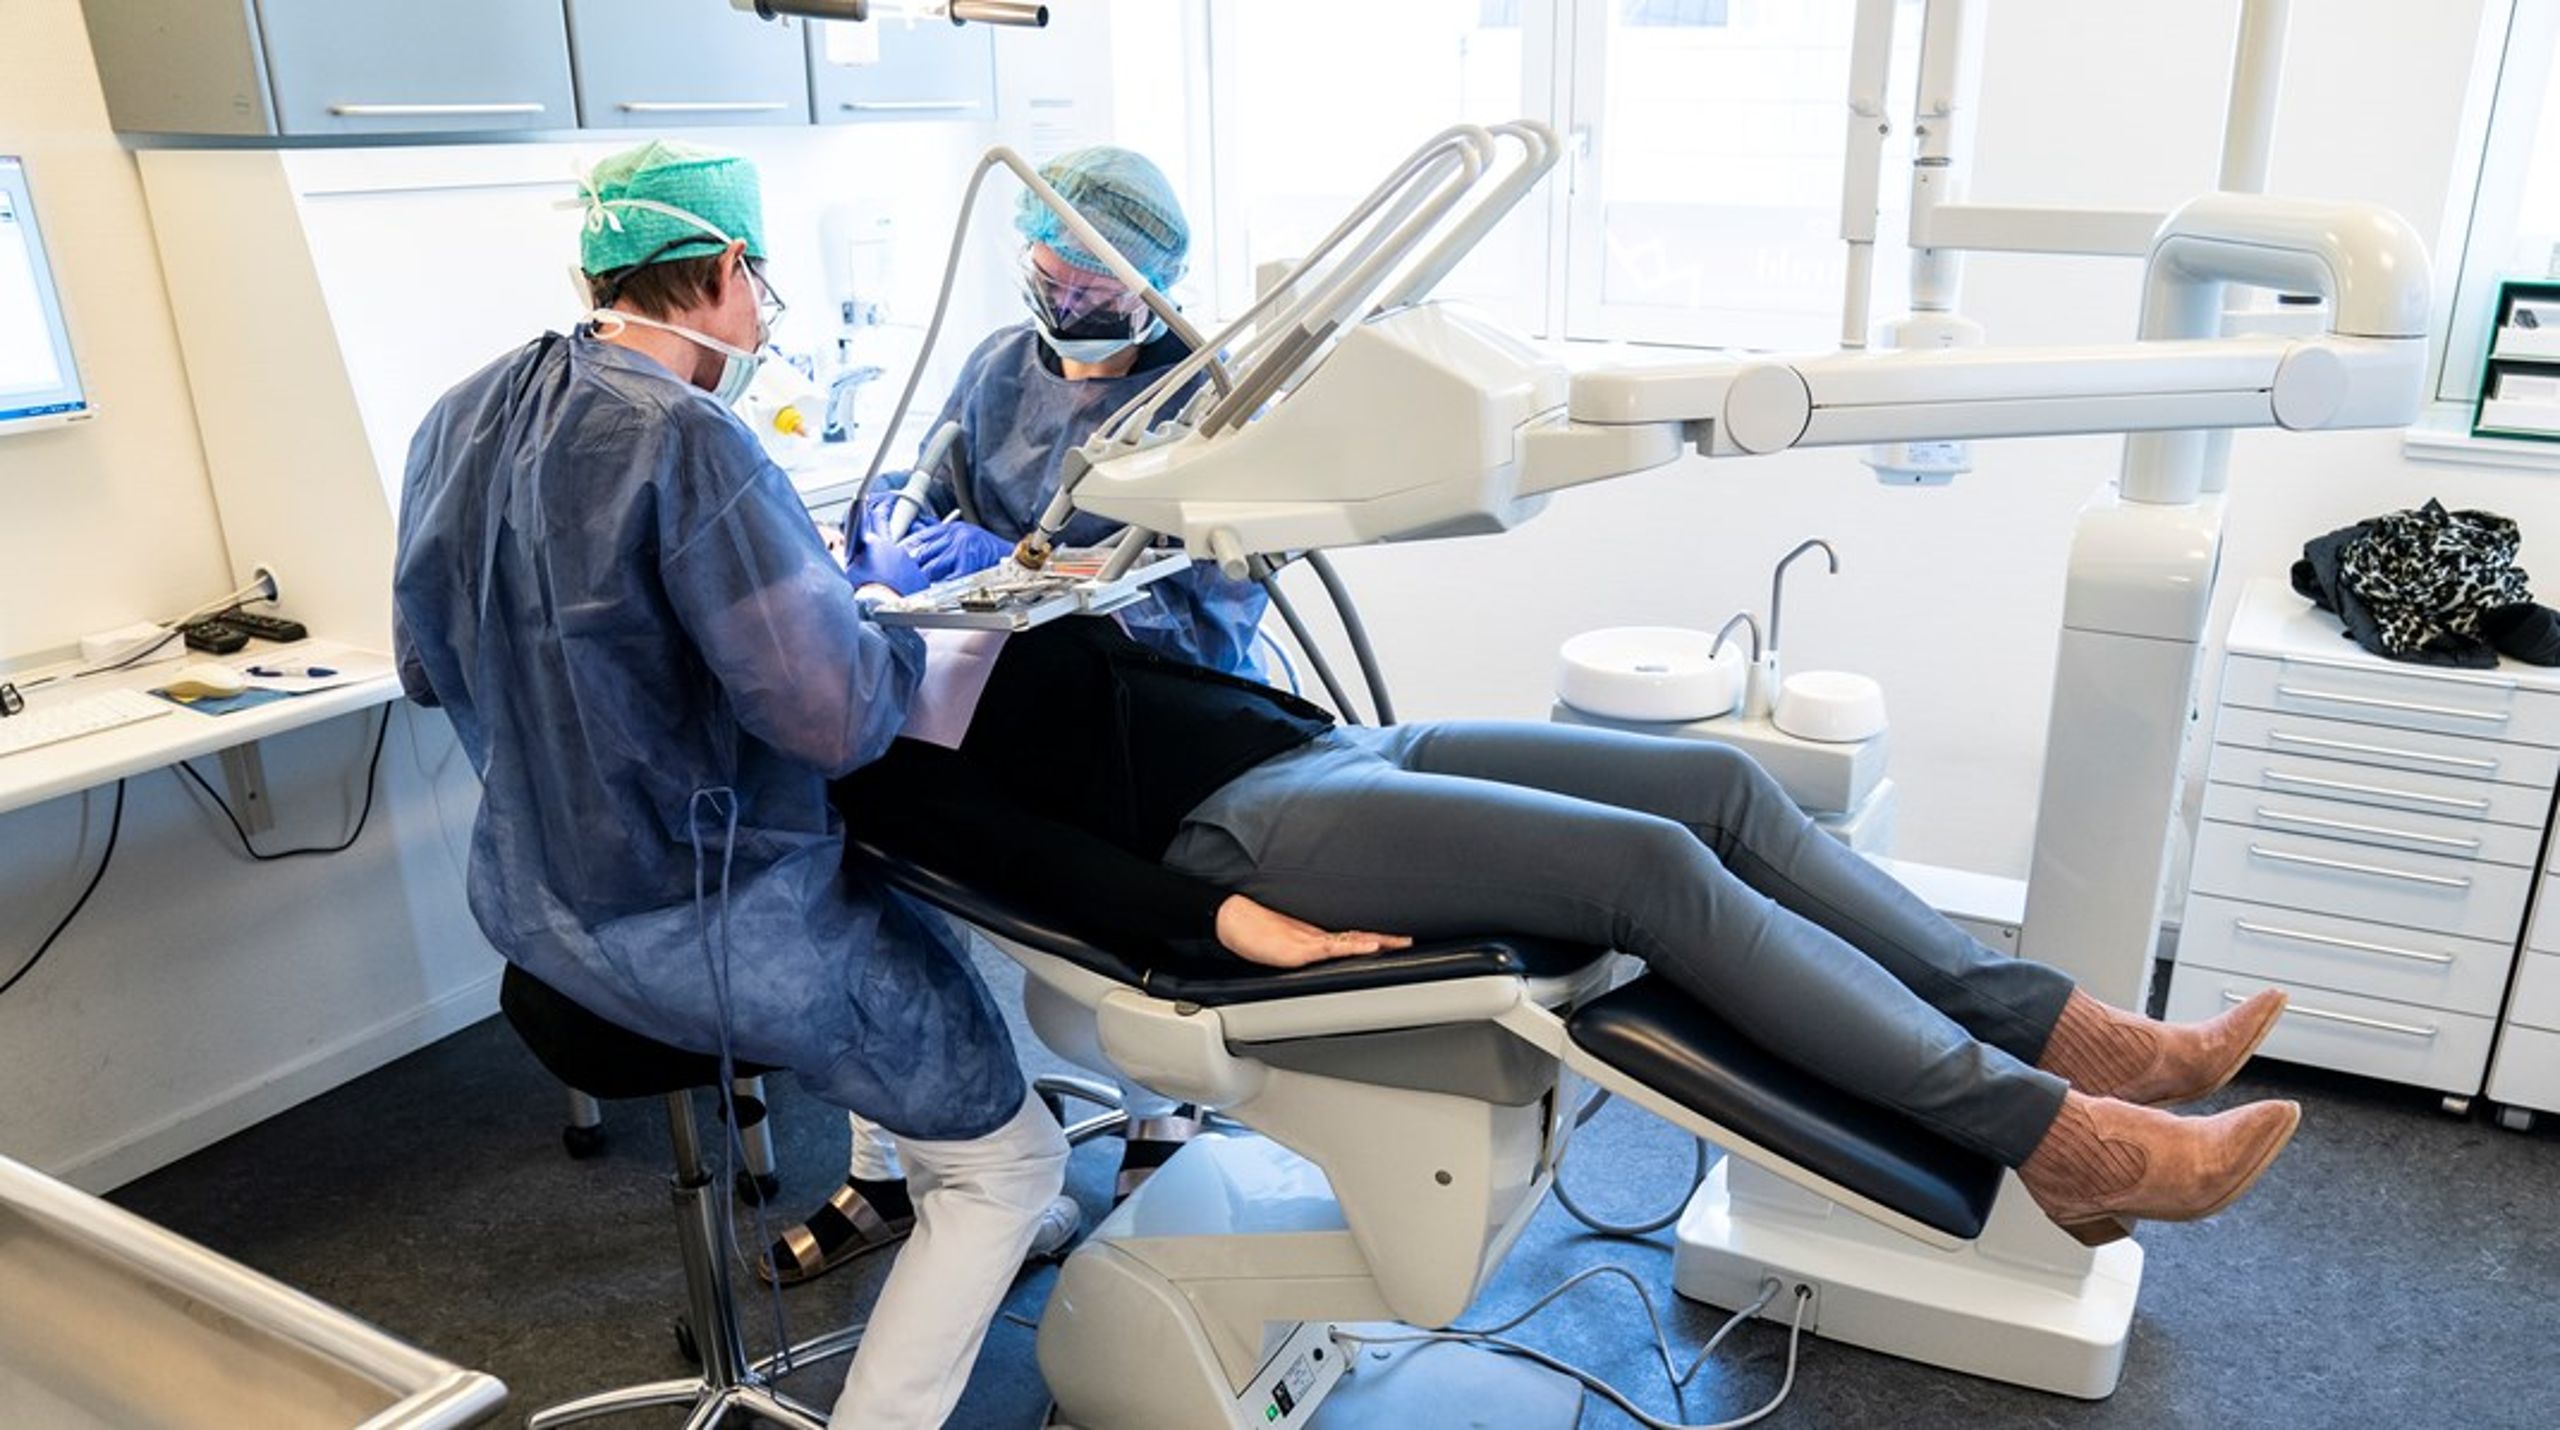 Selvom der på klinikkerne investeres markante summer i nyt og bedre udstyr, så kommer vi ingen vegne uden flere tandlæger og tandplejere, som vi desværre har stor mangel på allerede nu, skriver Jens Mondrup.